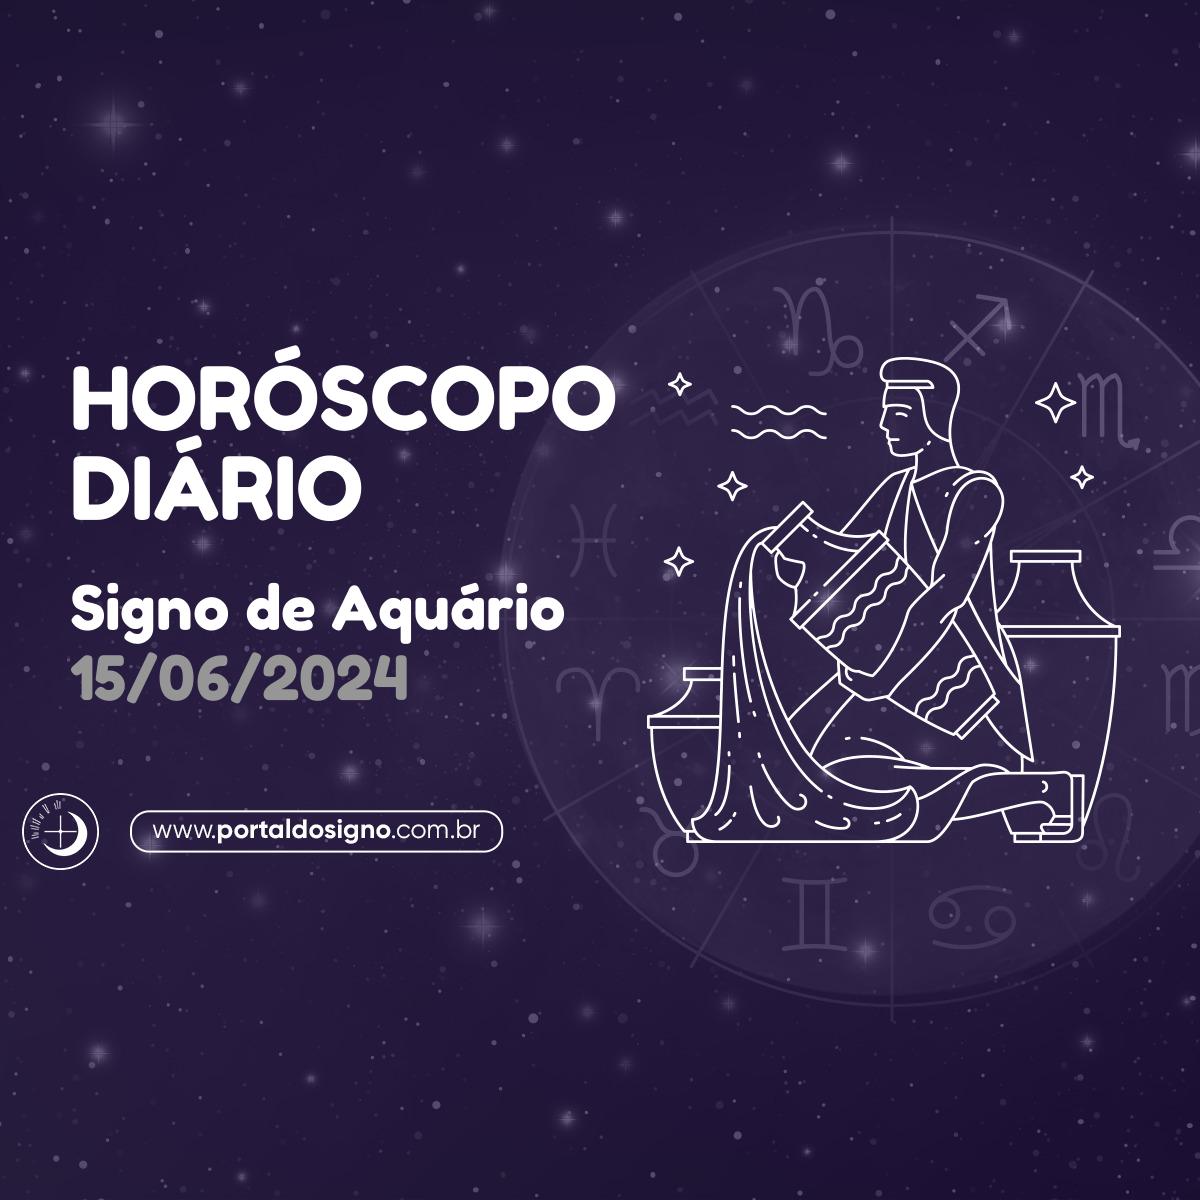 Horóscopo diário para Aquário em 15/06/2024